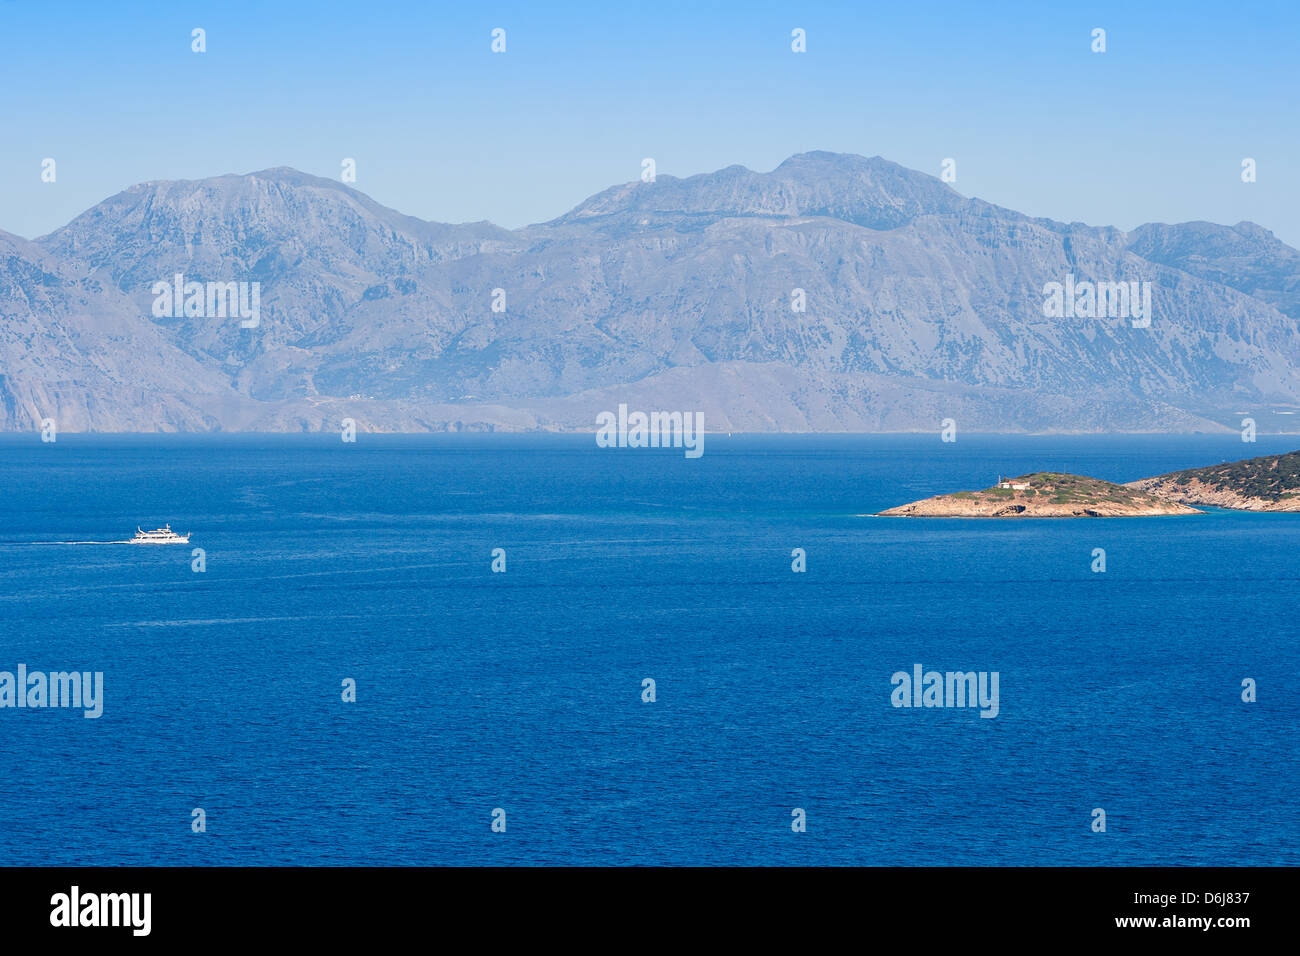 La baie de Mirabello. Crète, Grèce Banque D'Images